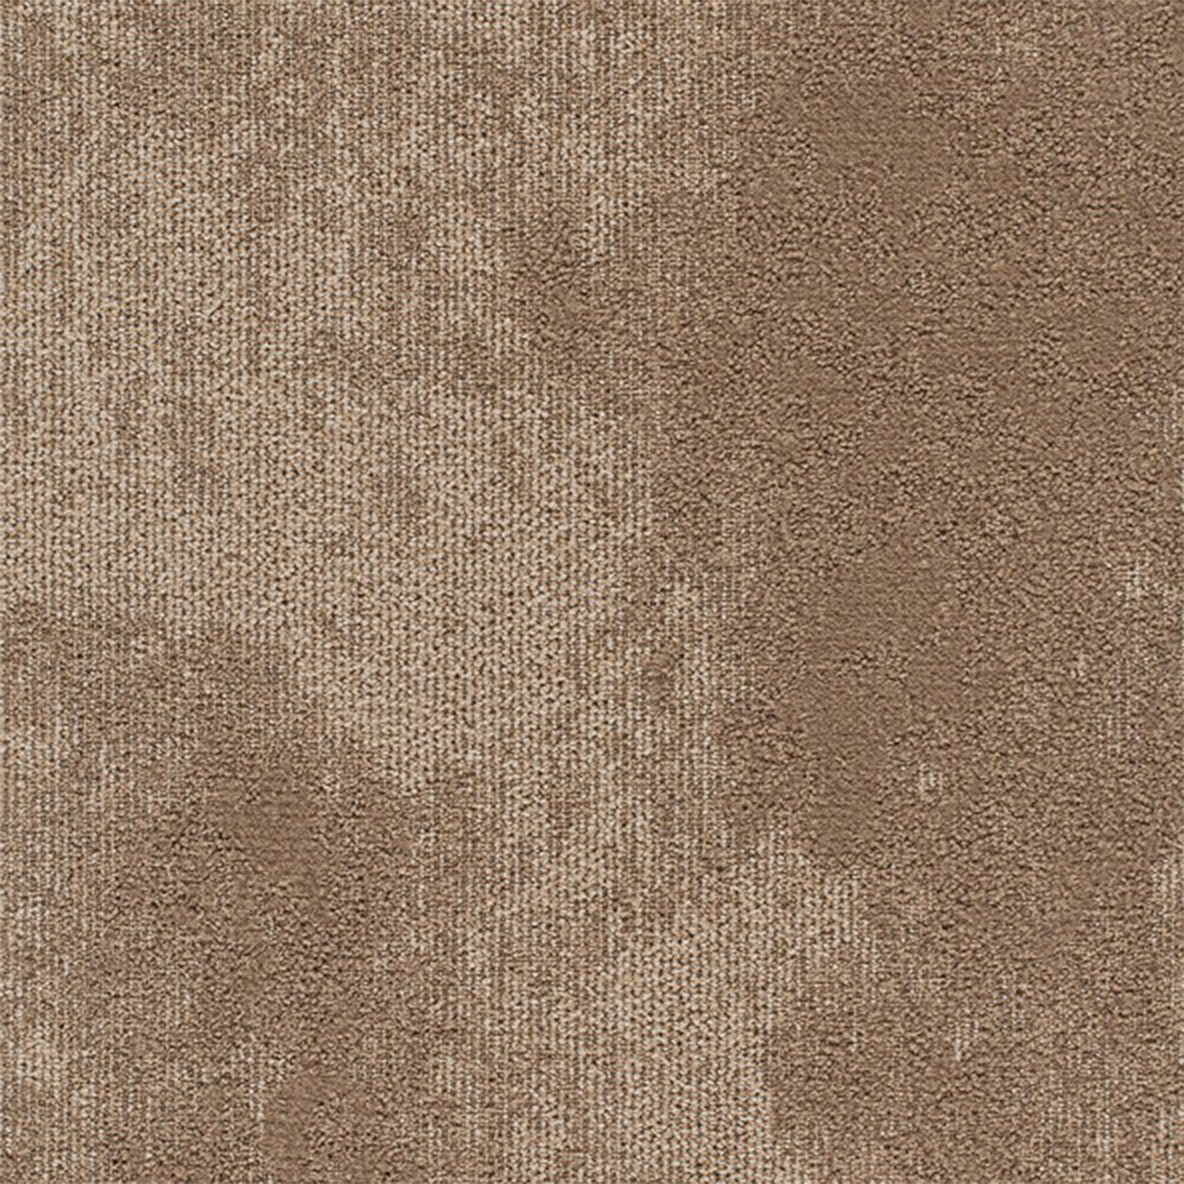 Nautilus Close up High Tide Commercial Carpet Tile .31 Inch x 50x50 cm per Tile